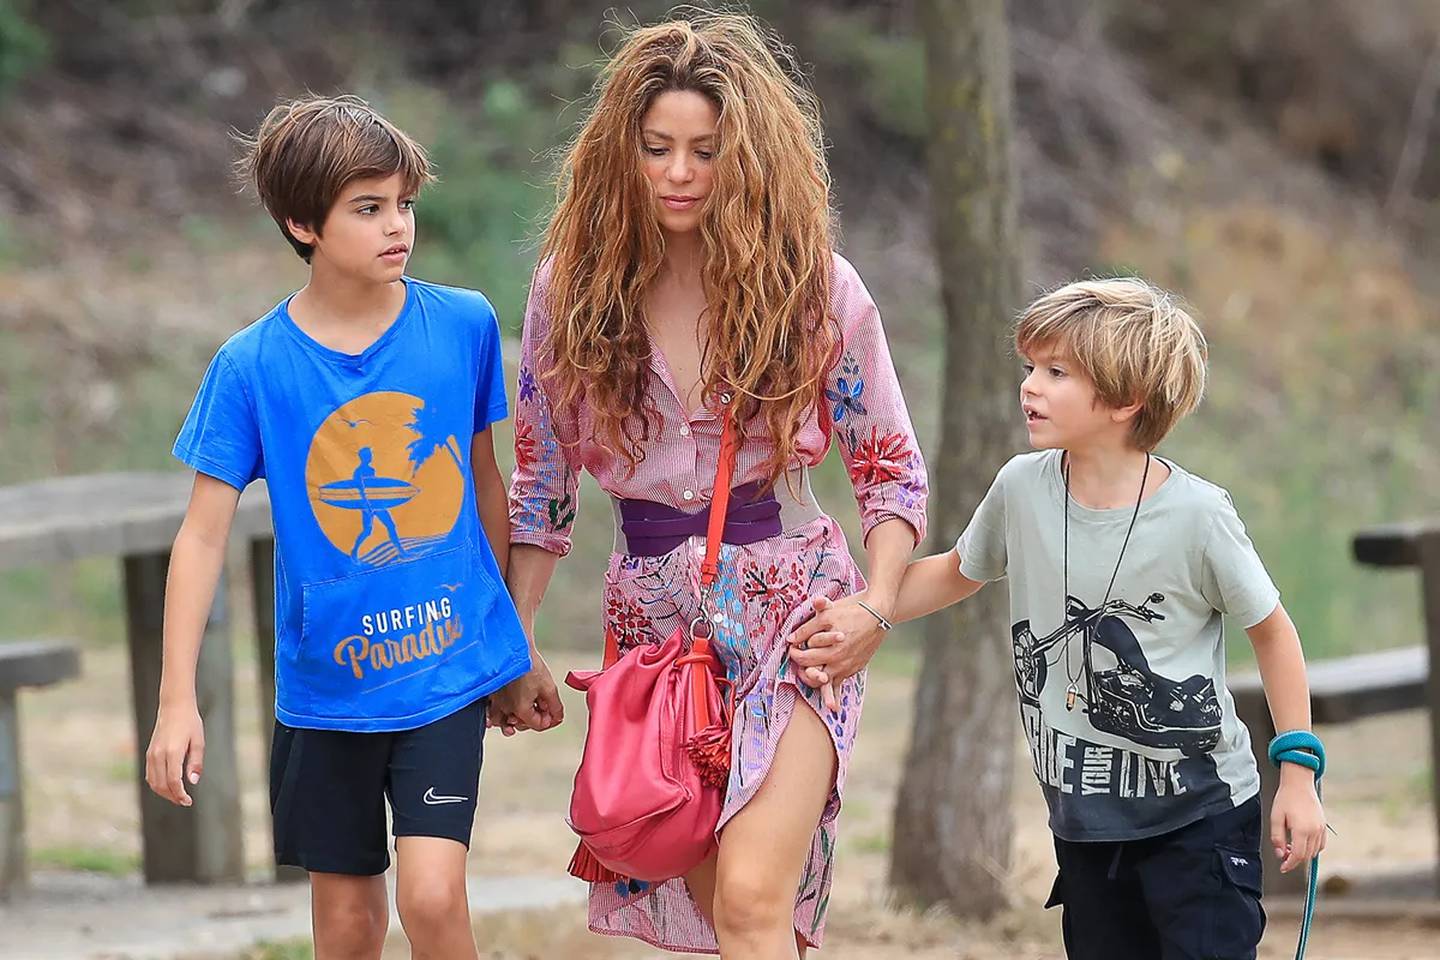 Shakira toma drástica decisión para alejar a los paparazzis de sus hijos